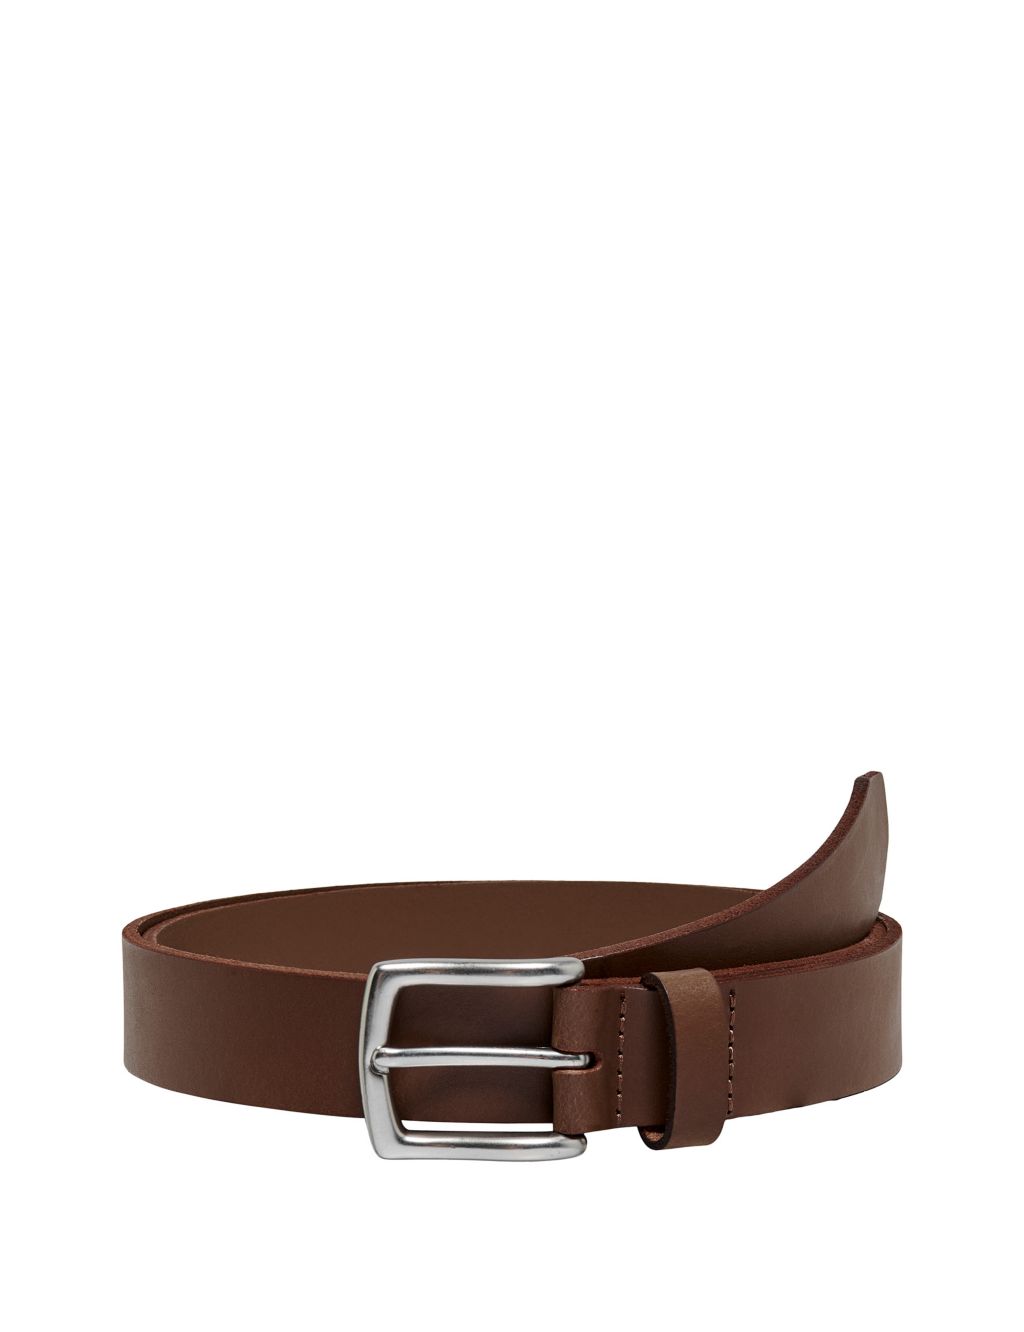 Leather Belt image 1